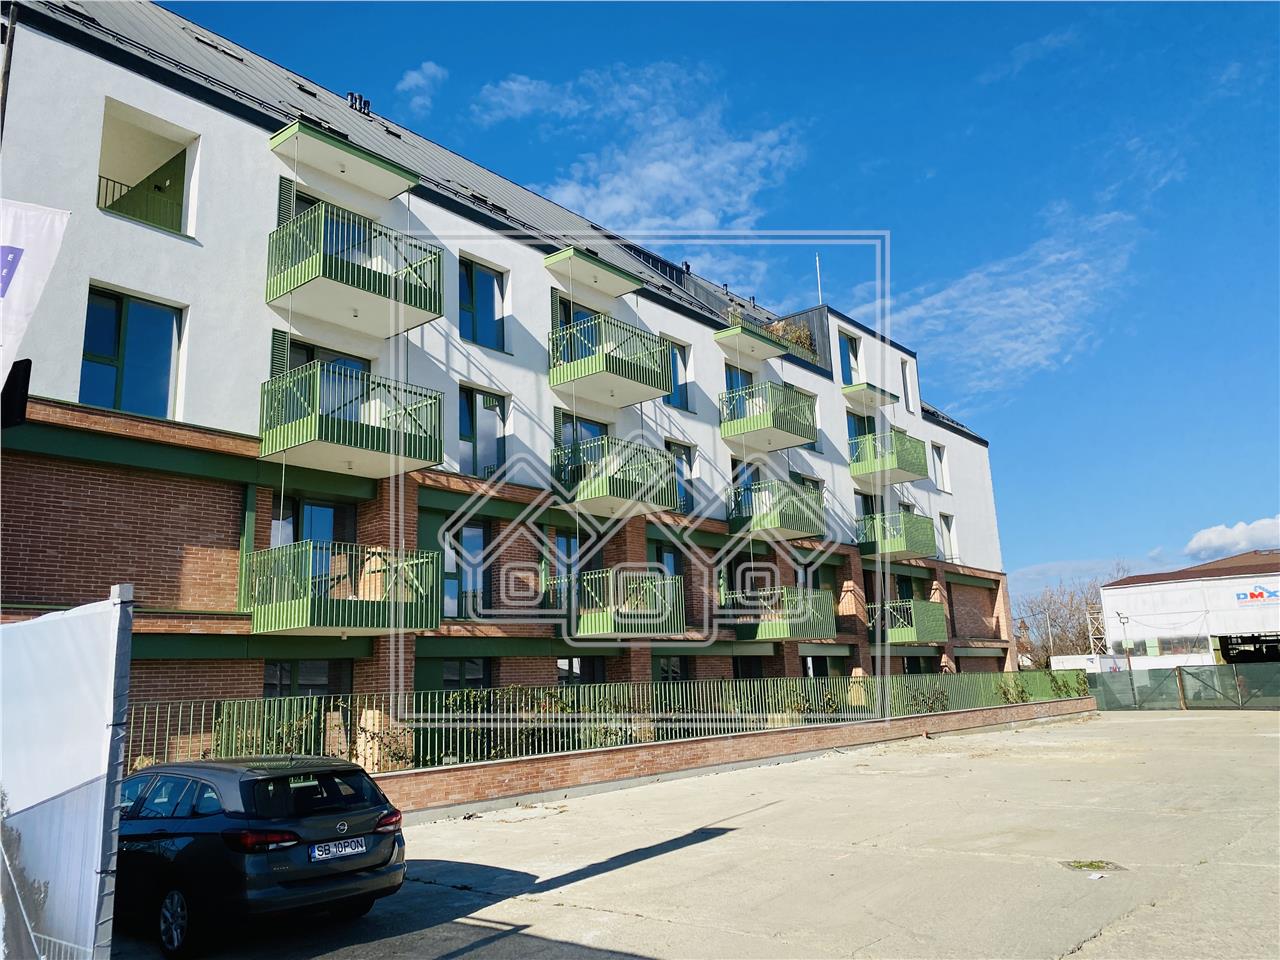 Apartament de vanzare in Sibiu - terasa 27 mp - intabulat